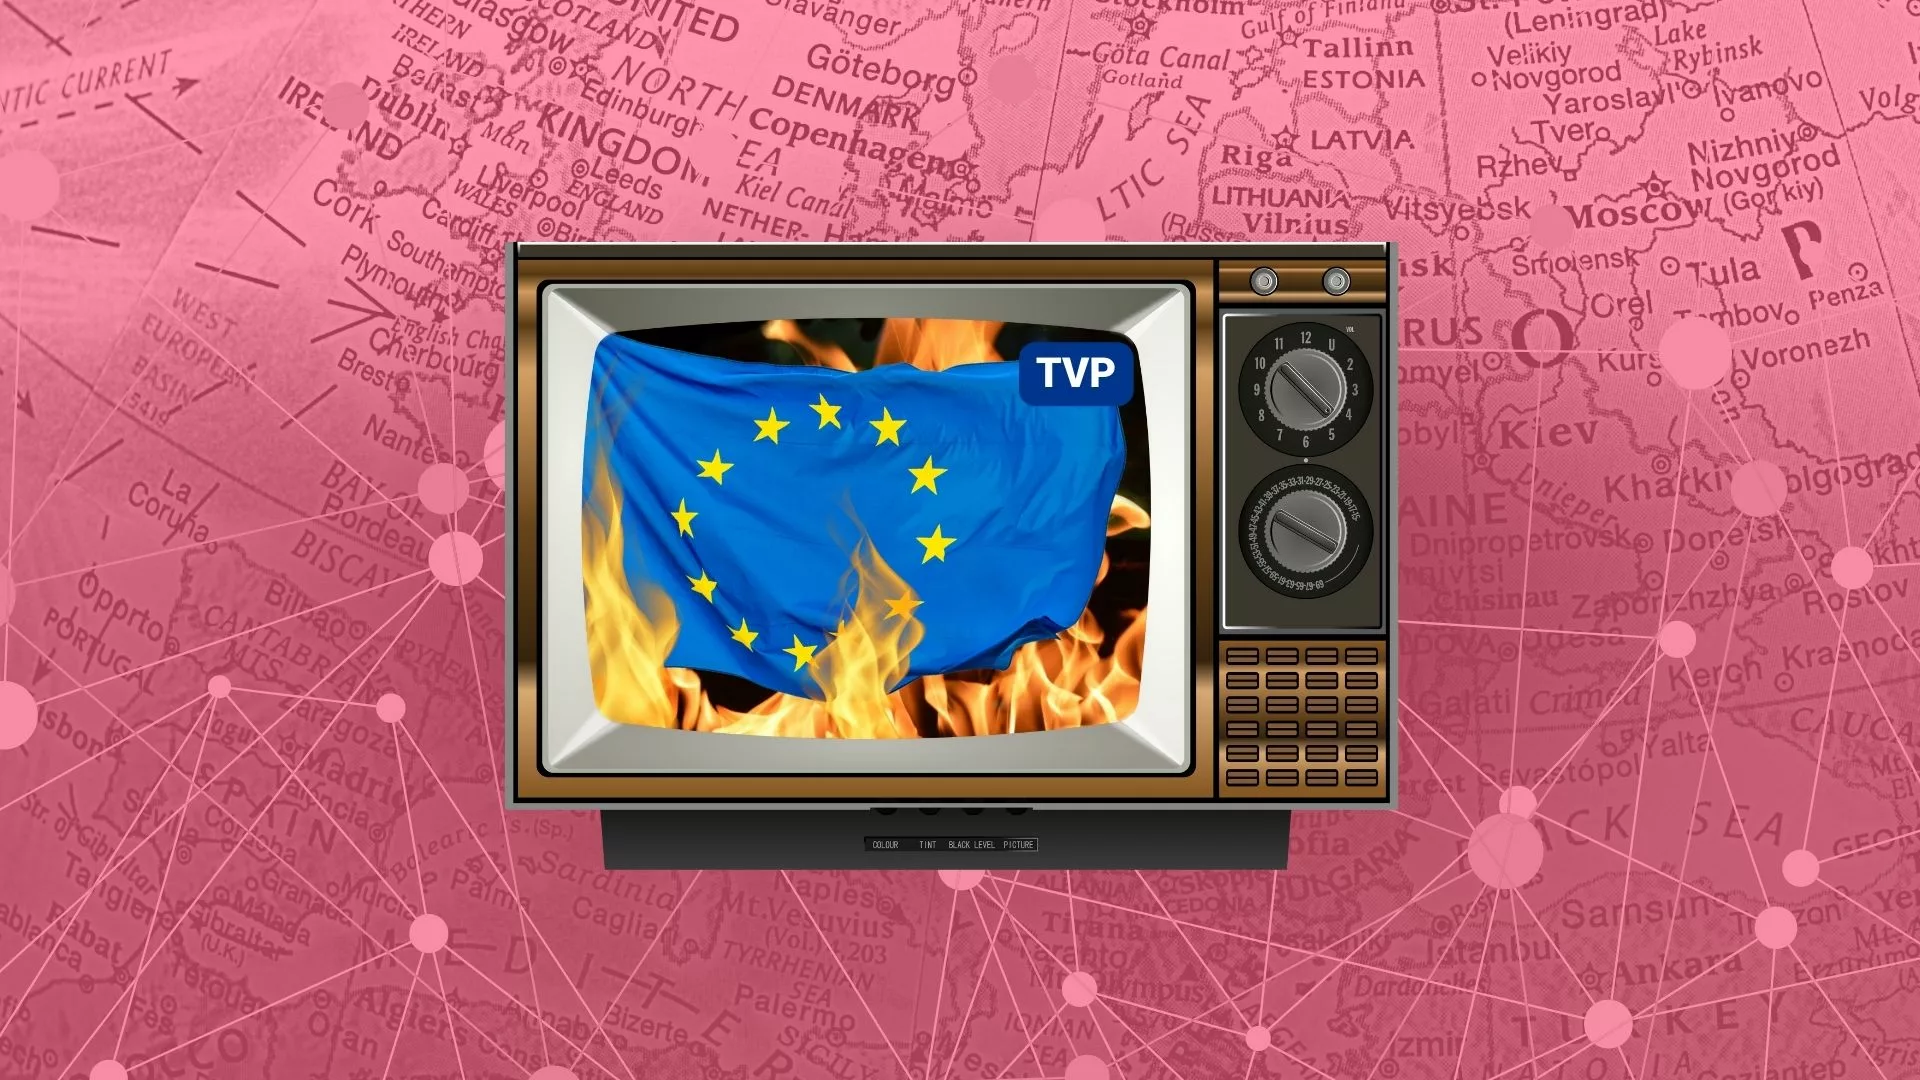 Manipulacje w TVP danymi o terroryzmie w UE